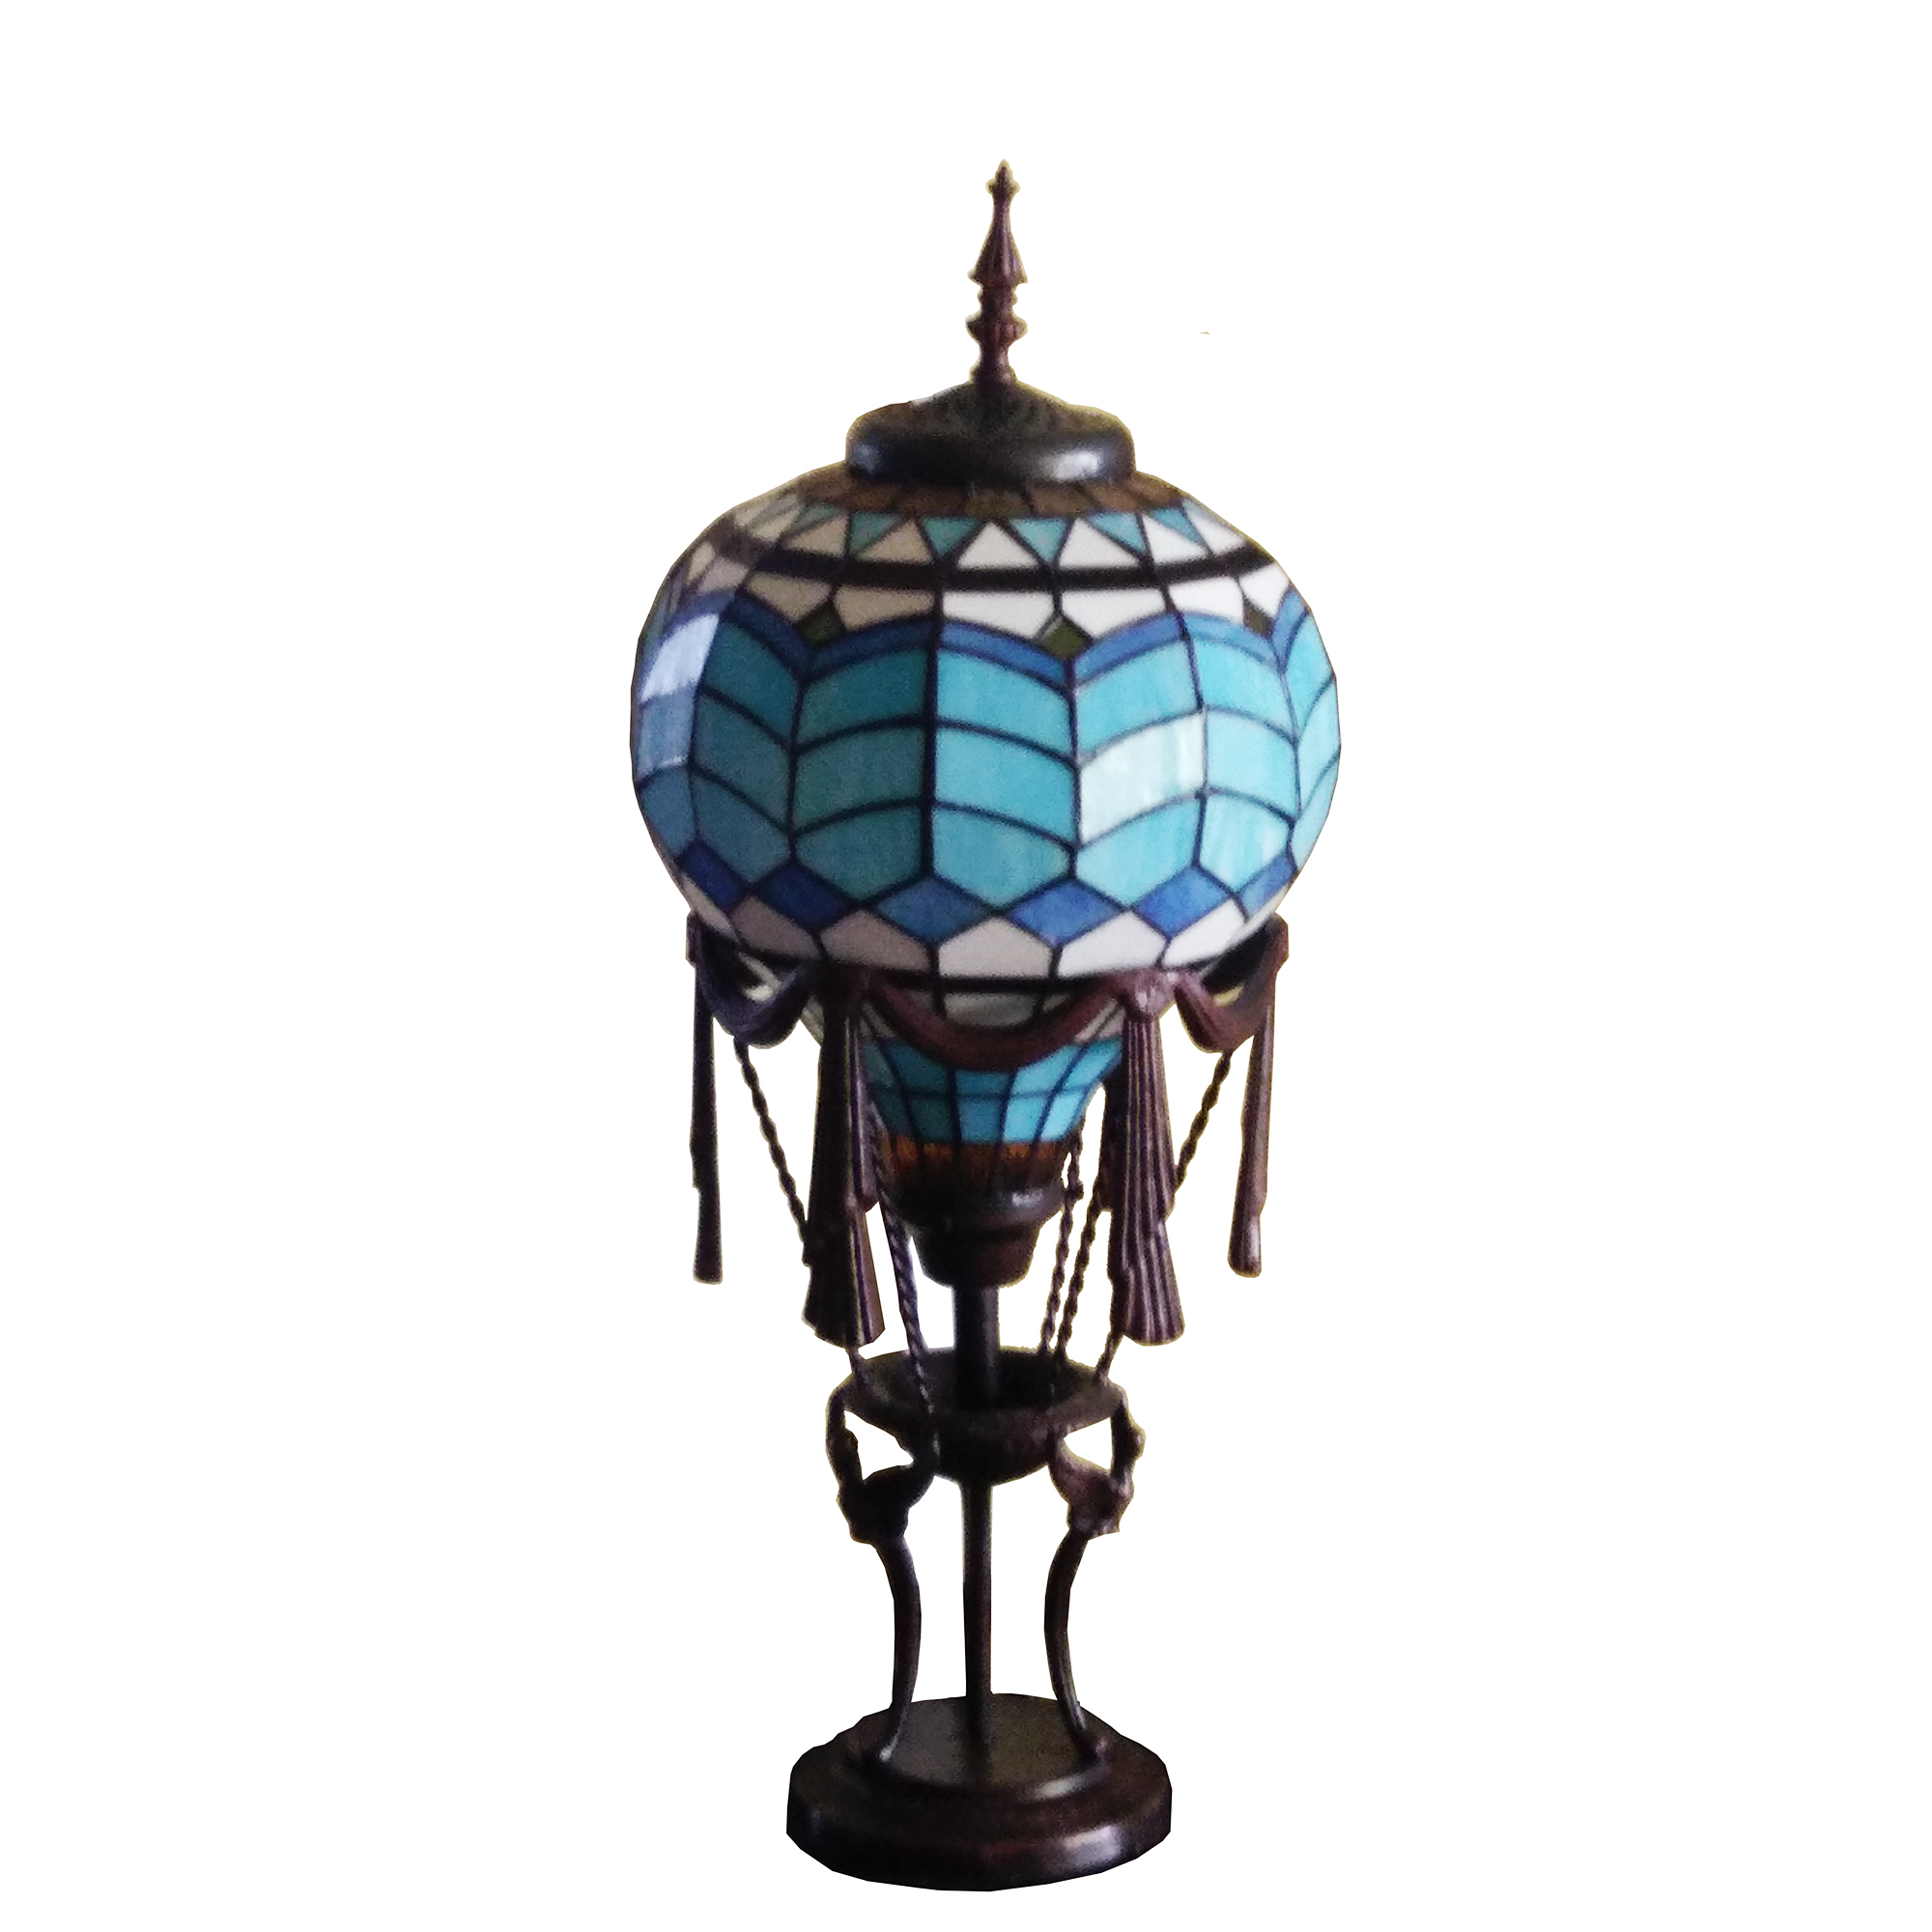 Hot Air Balloon lamp